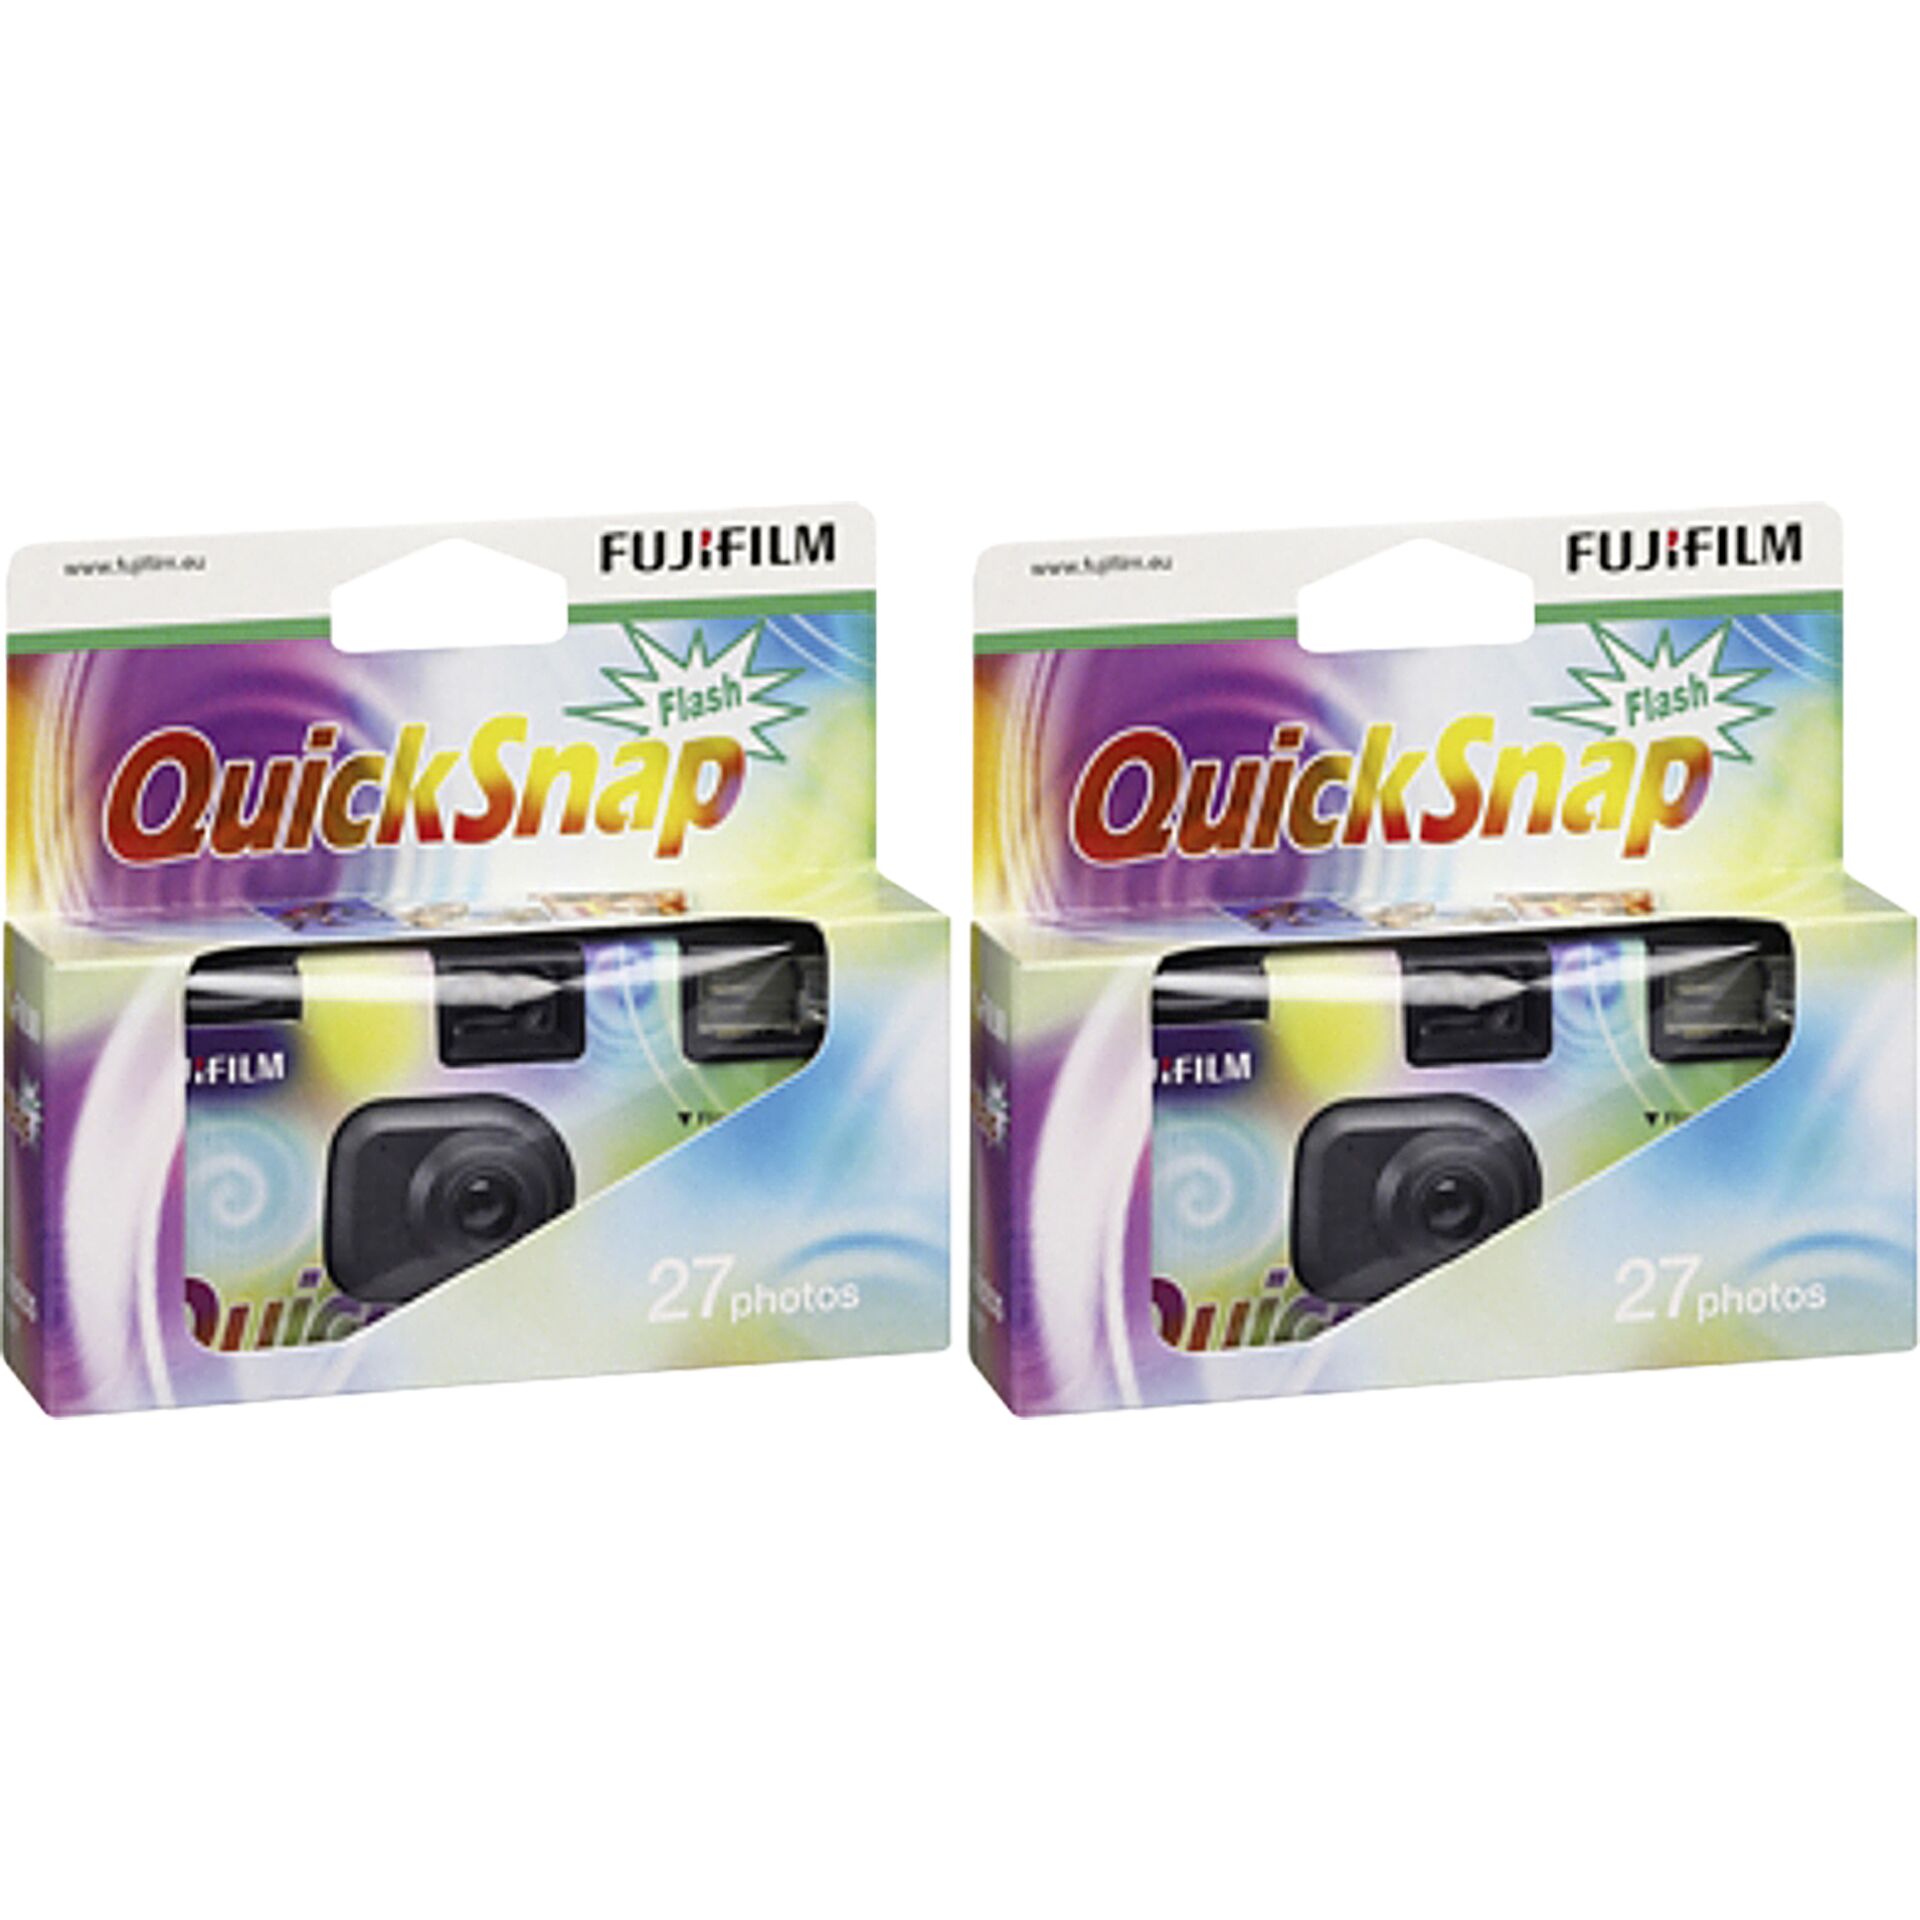 Fujifilm Quicksnap 400 27 Jeans Flash